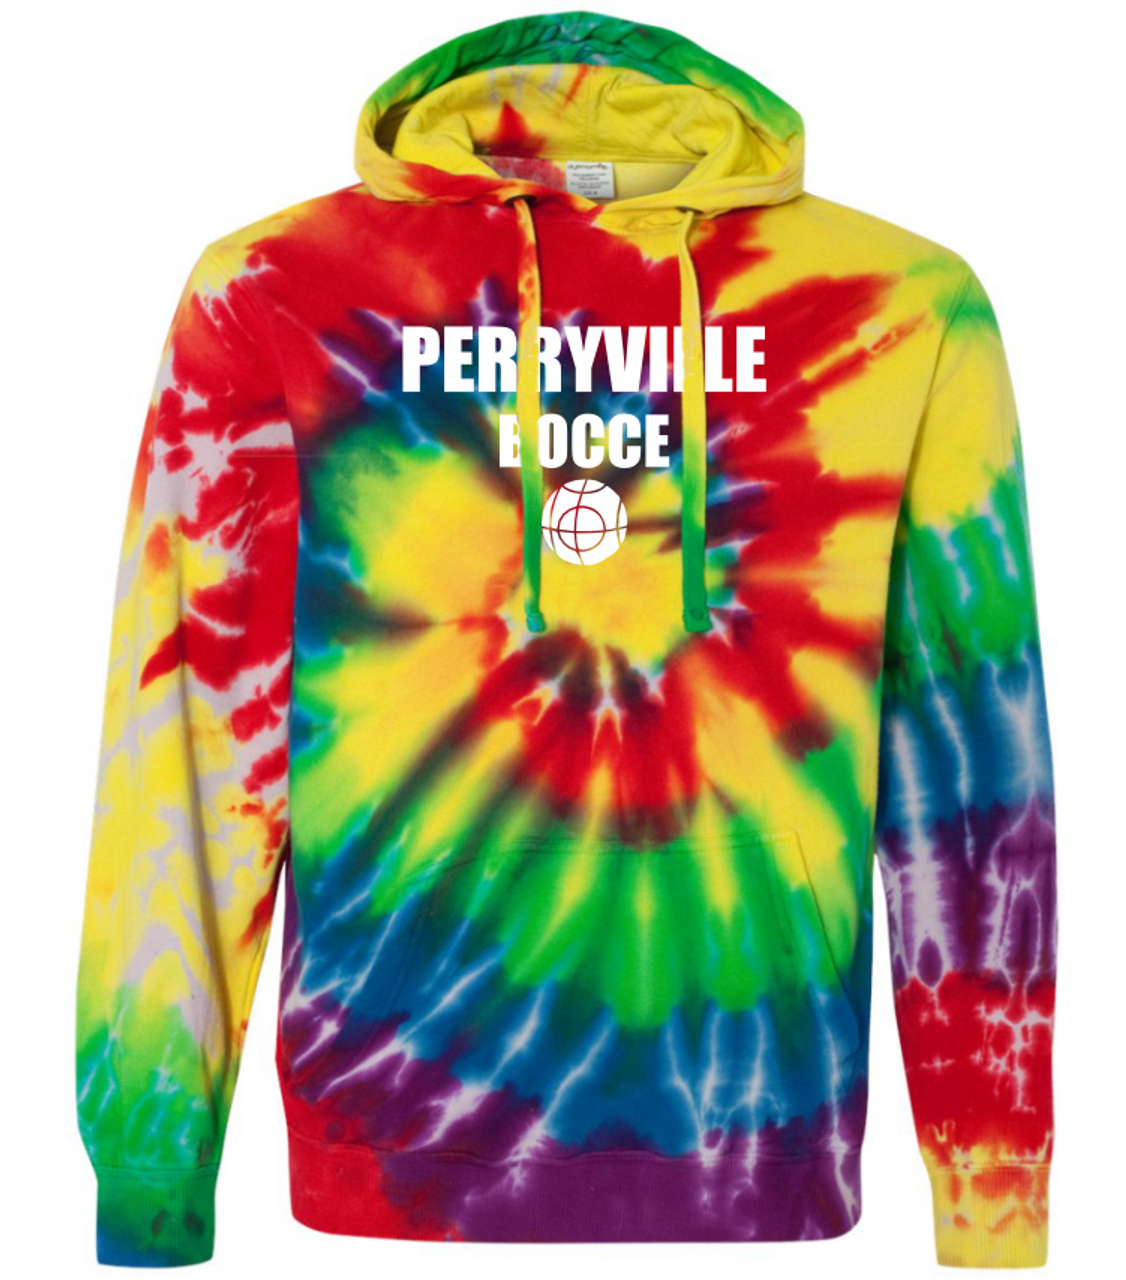 Perryville Bocce Tie Dye Hoodie